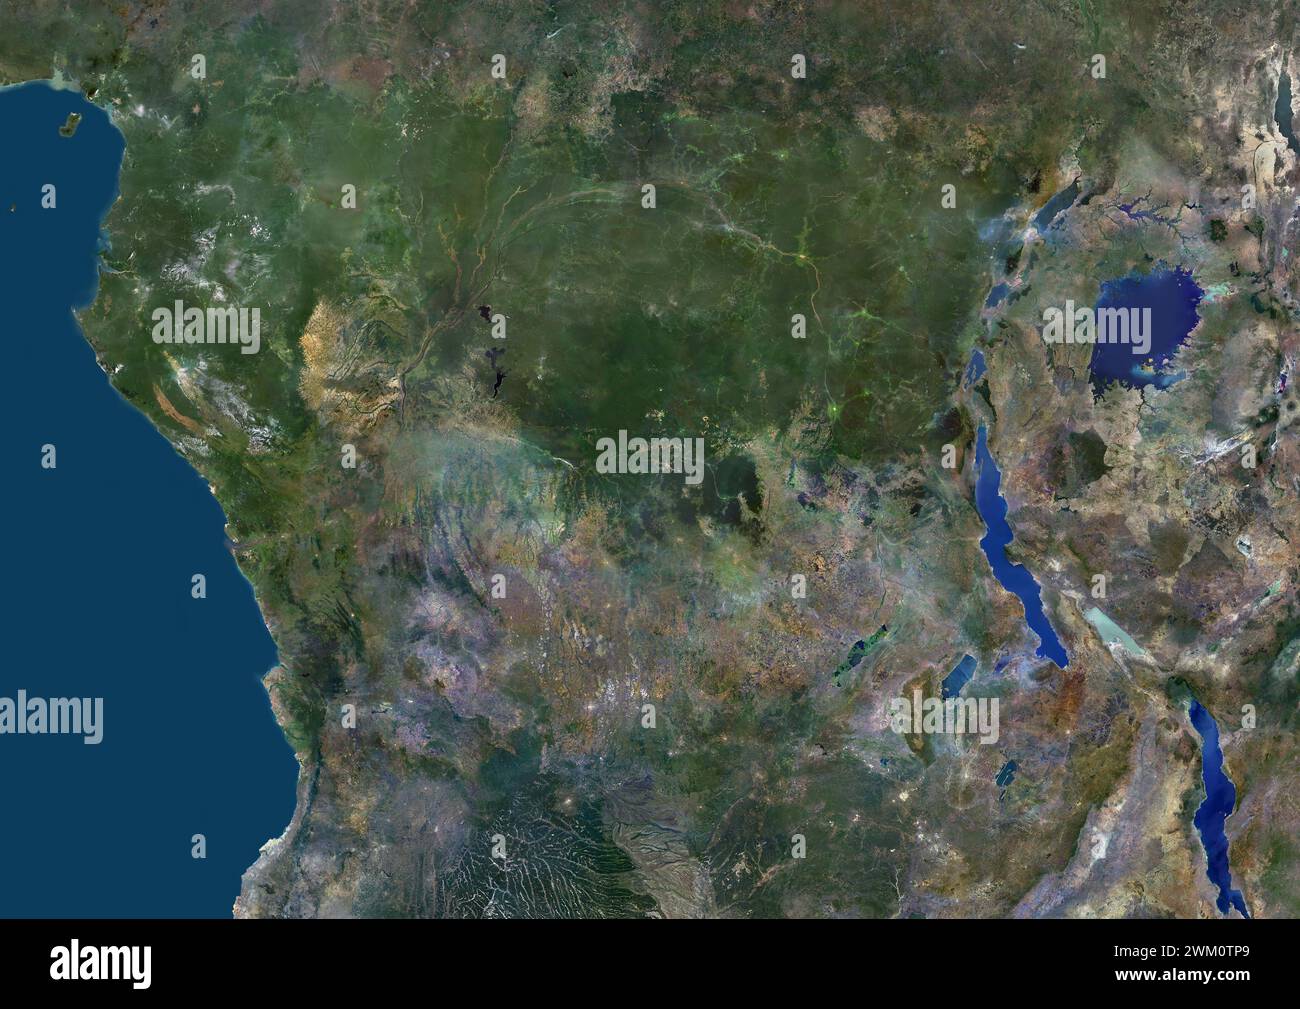 Immagine satellitare a colori della Repubblica Democratica del Congo e dei paesi limitrofi, tra cui Gabon e Repubblica del Congo. Foto Stock